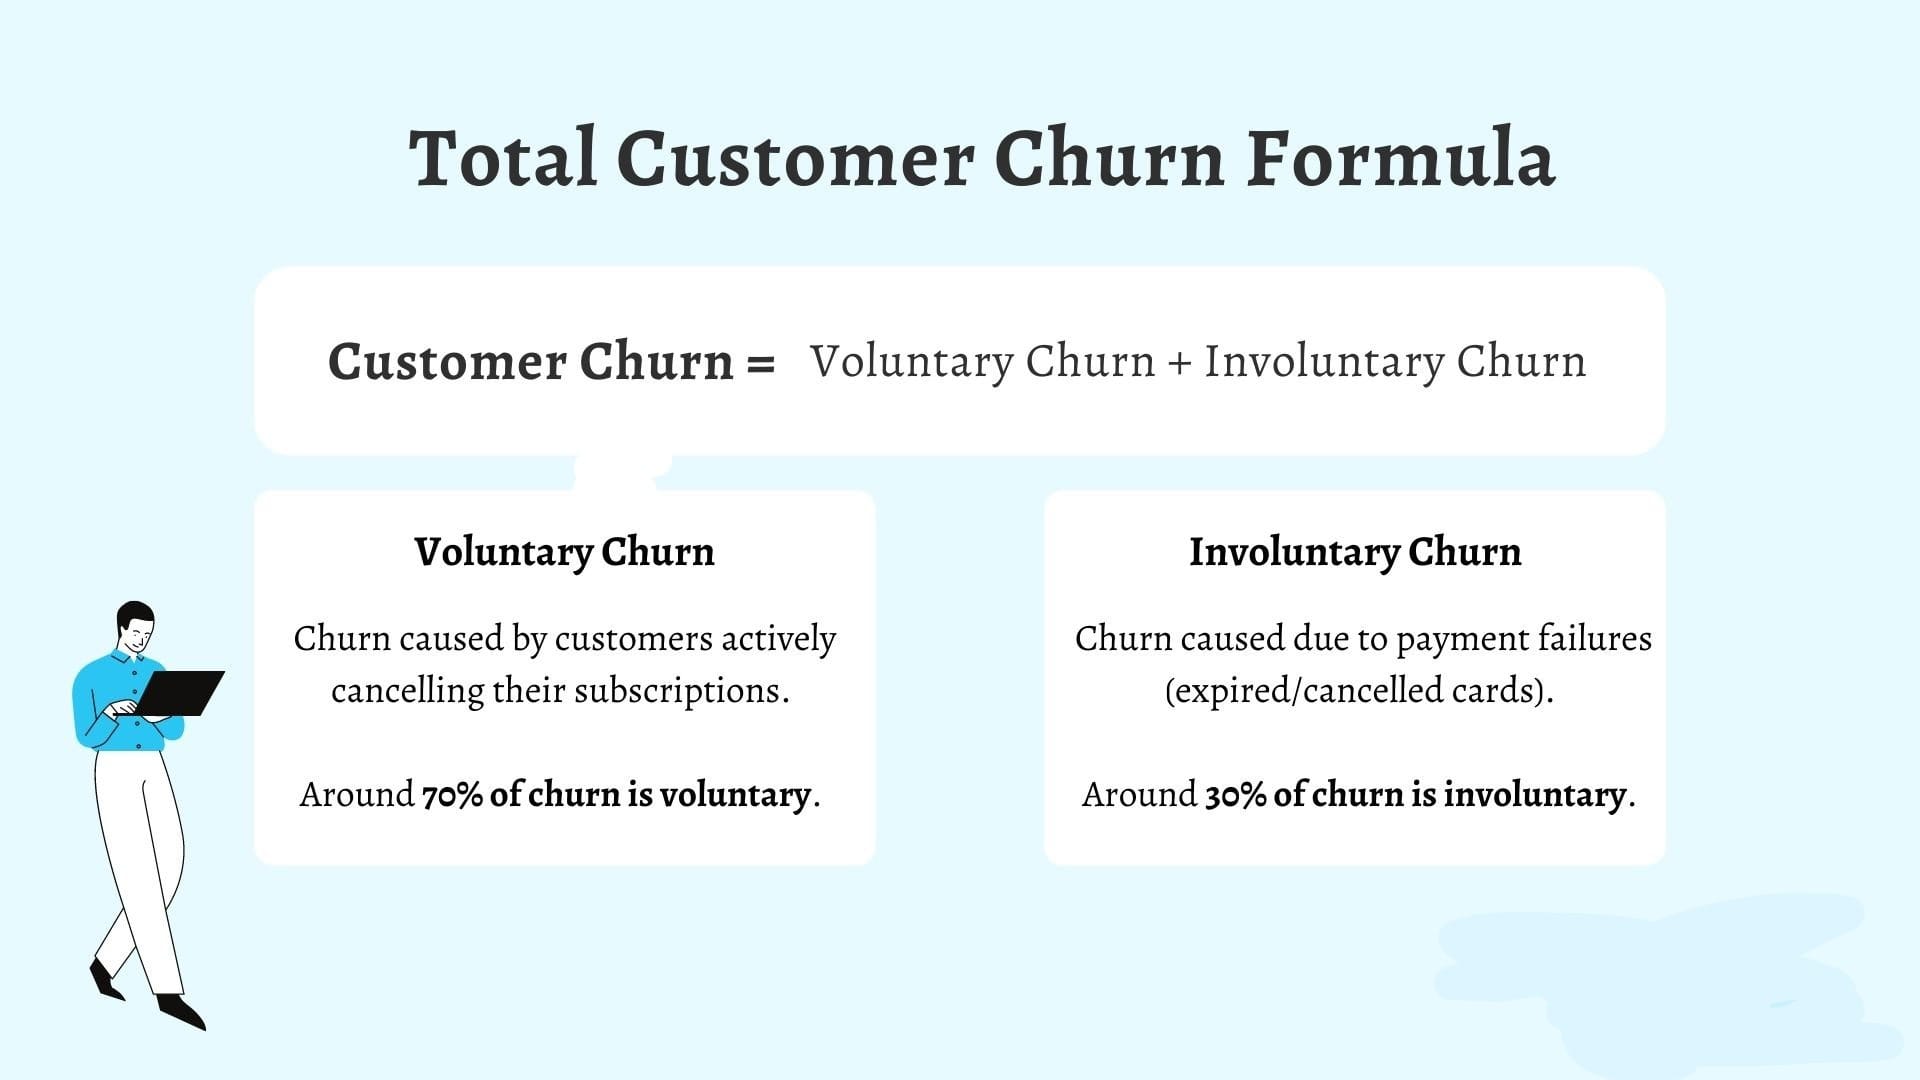 What is Customer Churn?